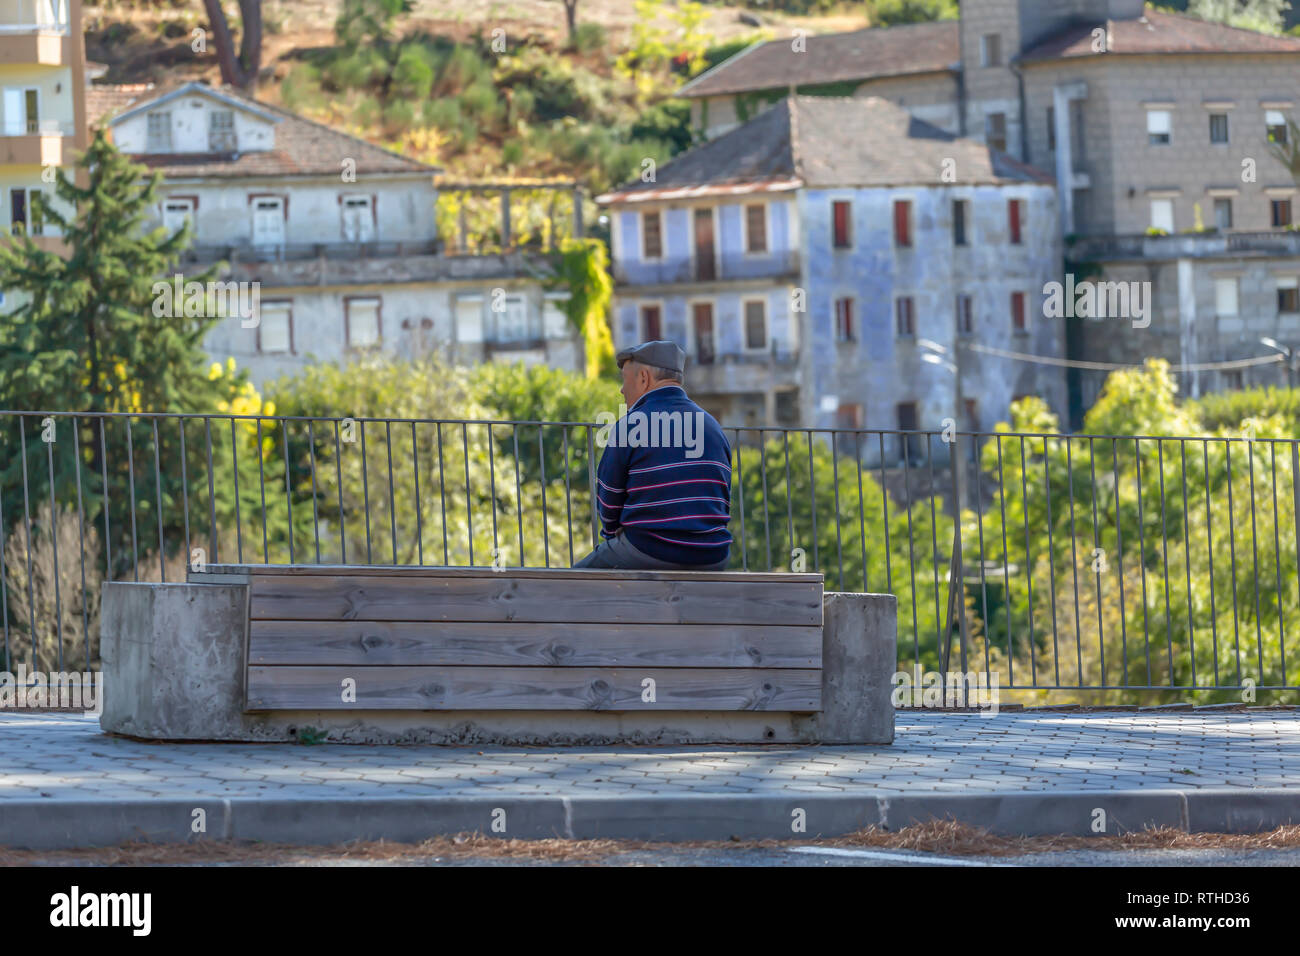 Viseu / Portugal - 1005 2018 : senior woman relaxing assis sur un banc en bois et béton sur le bord d'un trottoir pour piétons road Banque D'Images